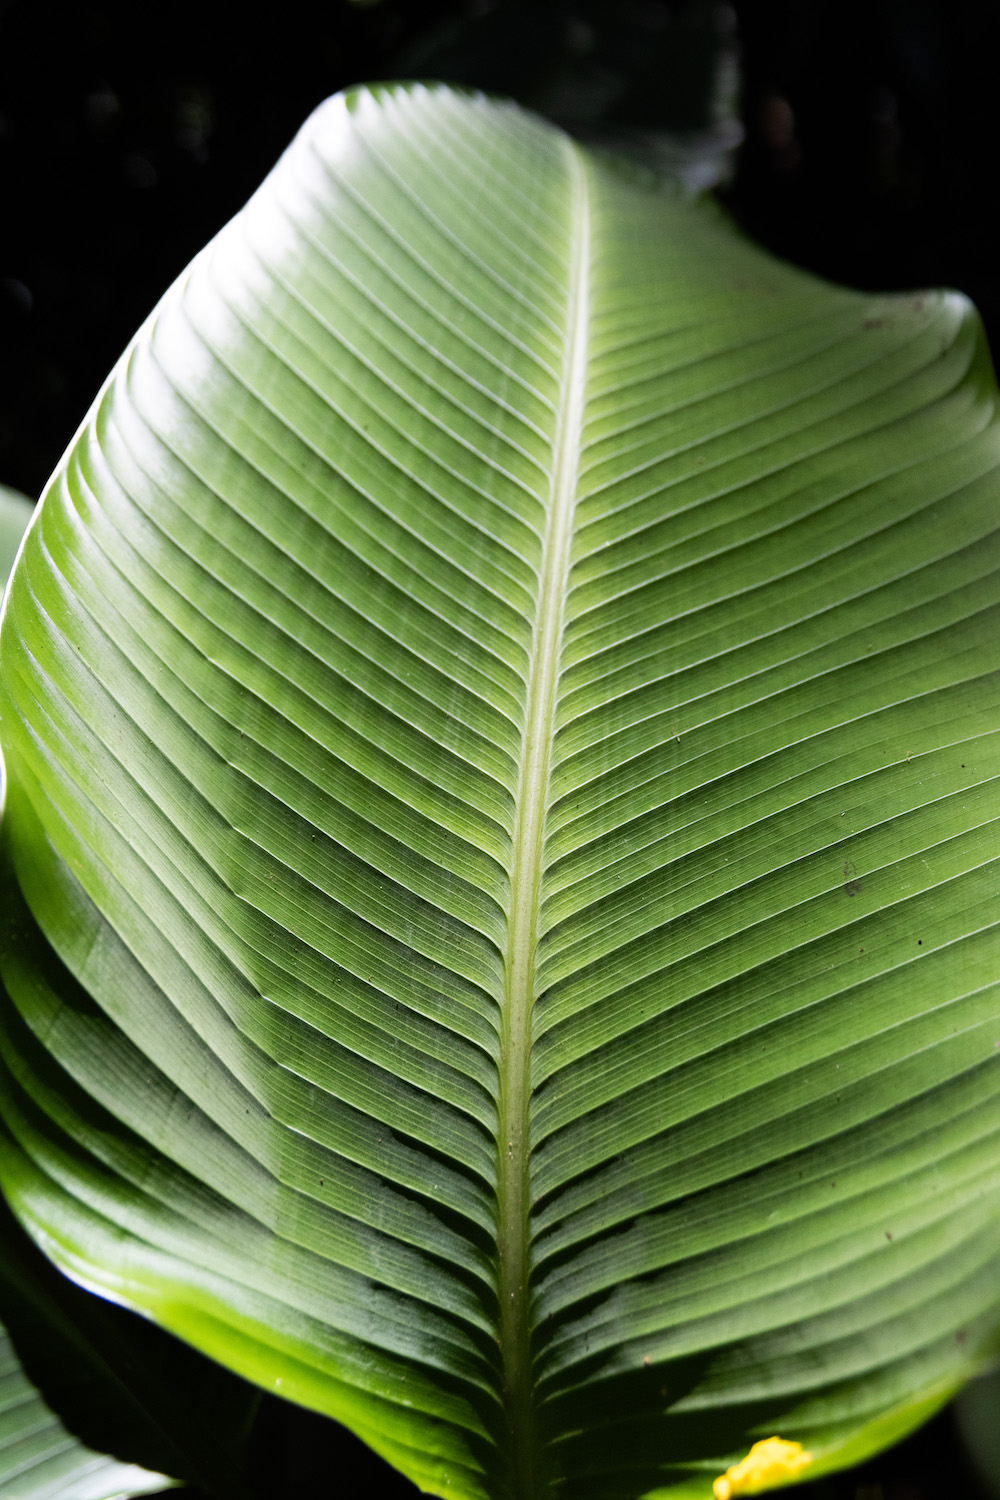 A palm leaf from the island of Kauai 